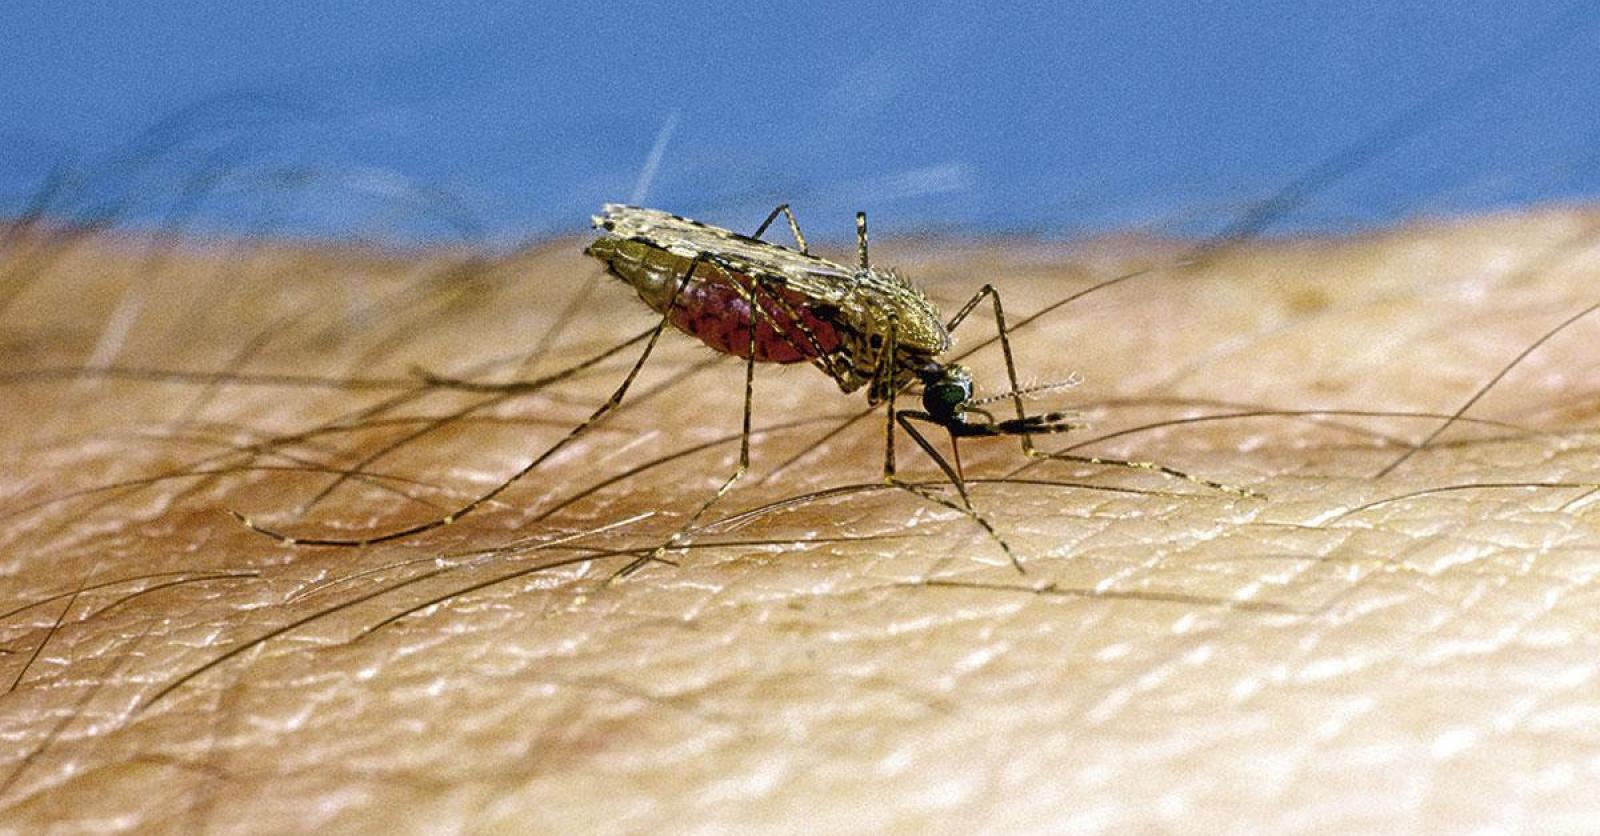 Anti-moustique : 3 répulsifs efficaces contre les moustiques